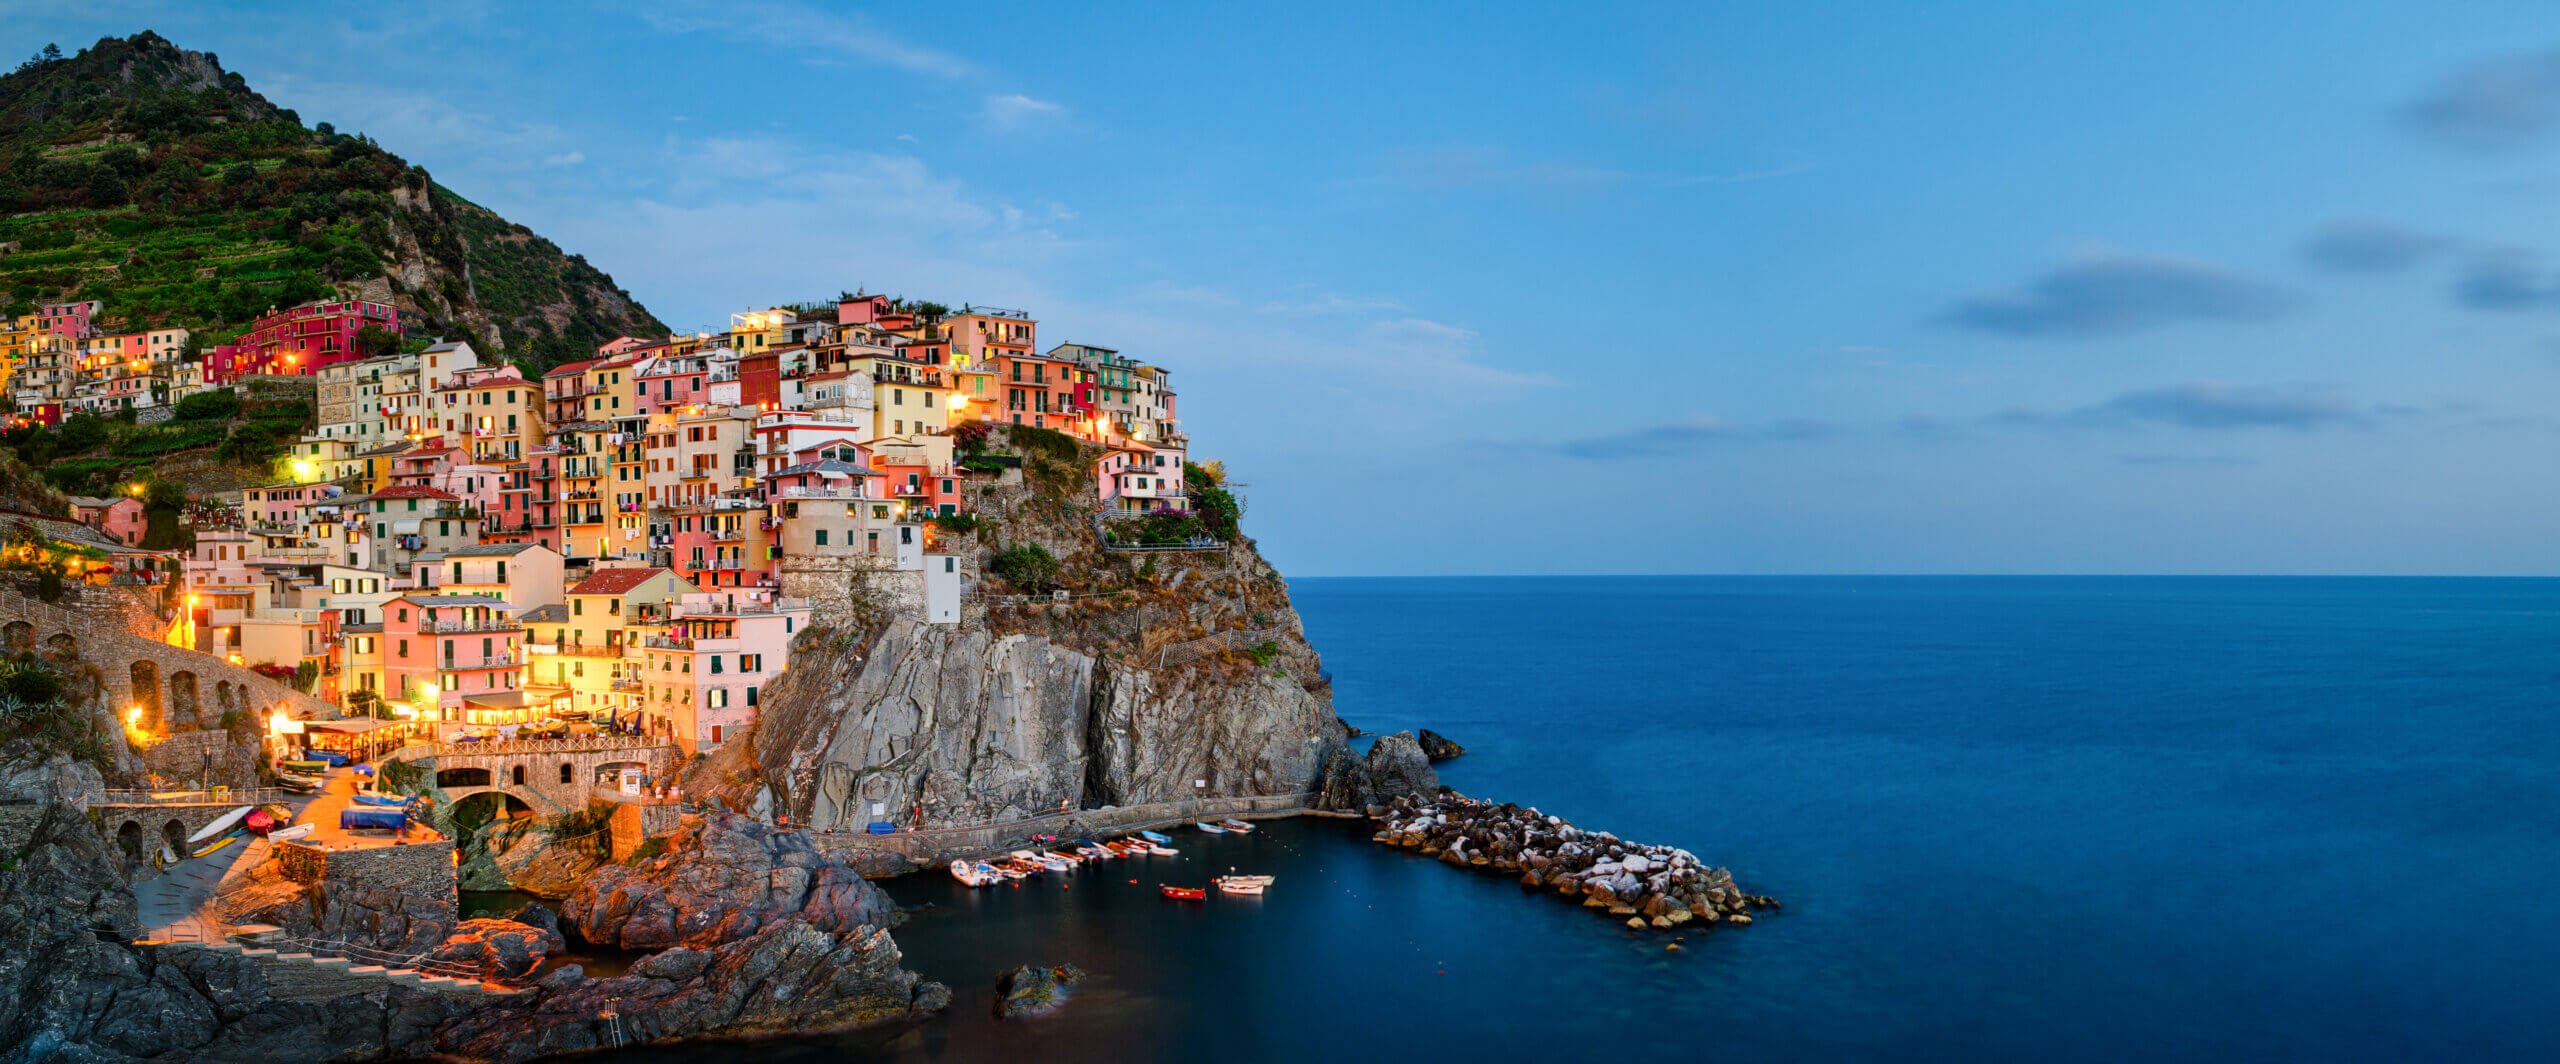 Togrejse til Italien og Cinque Terre